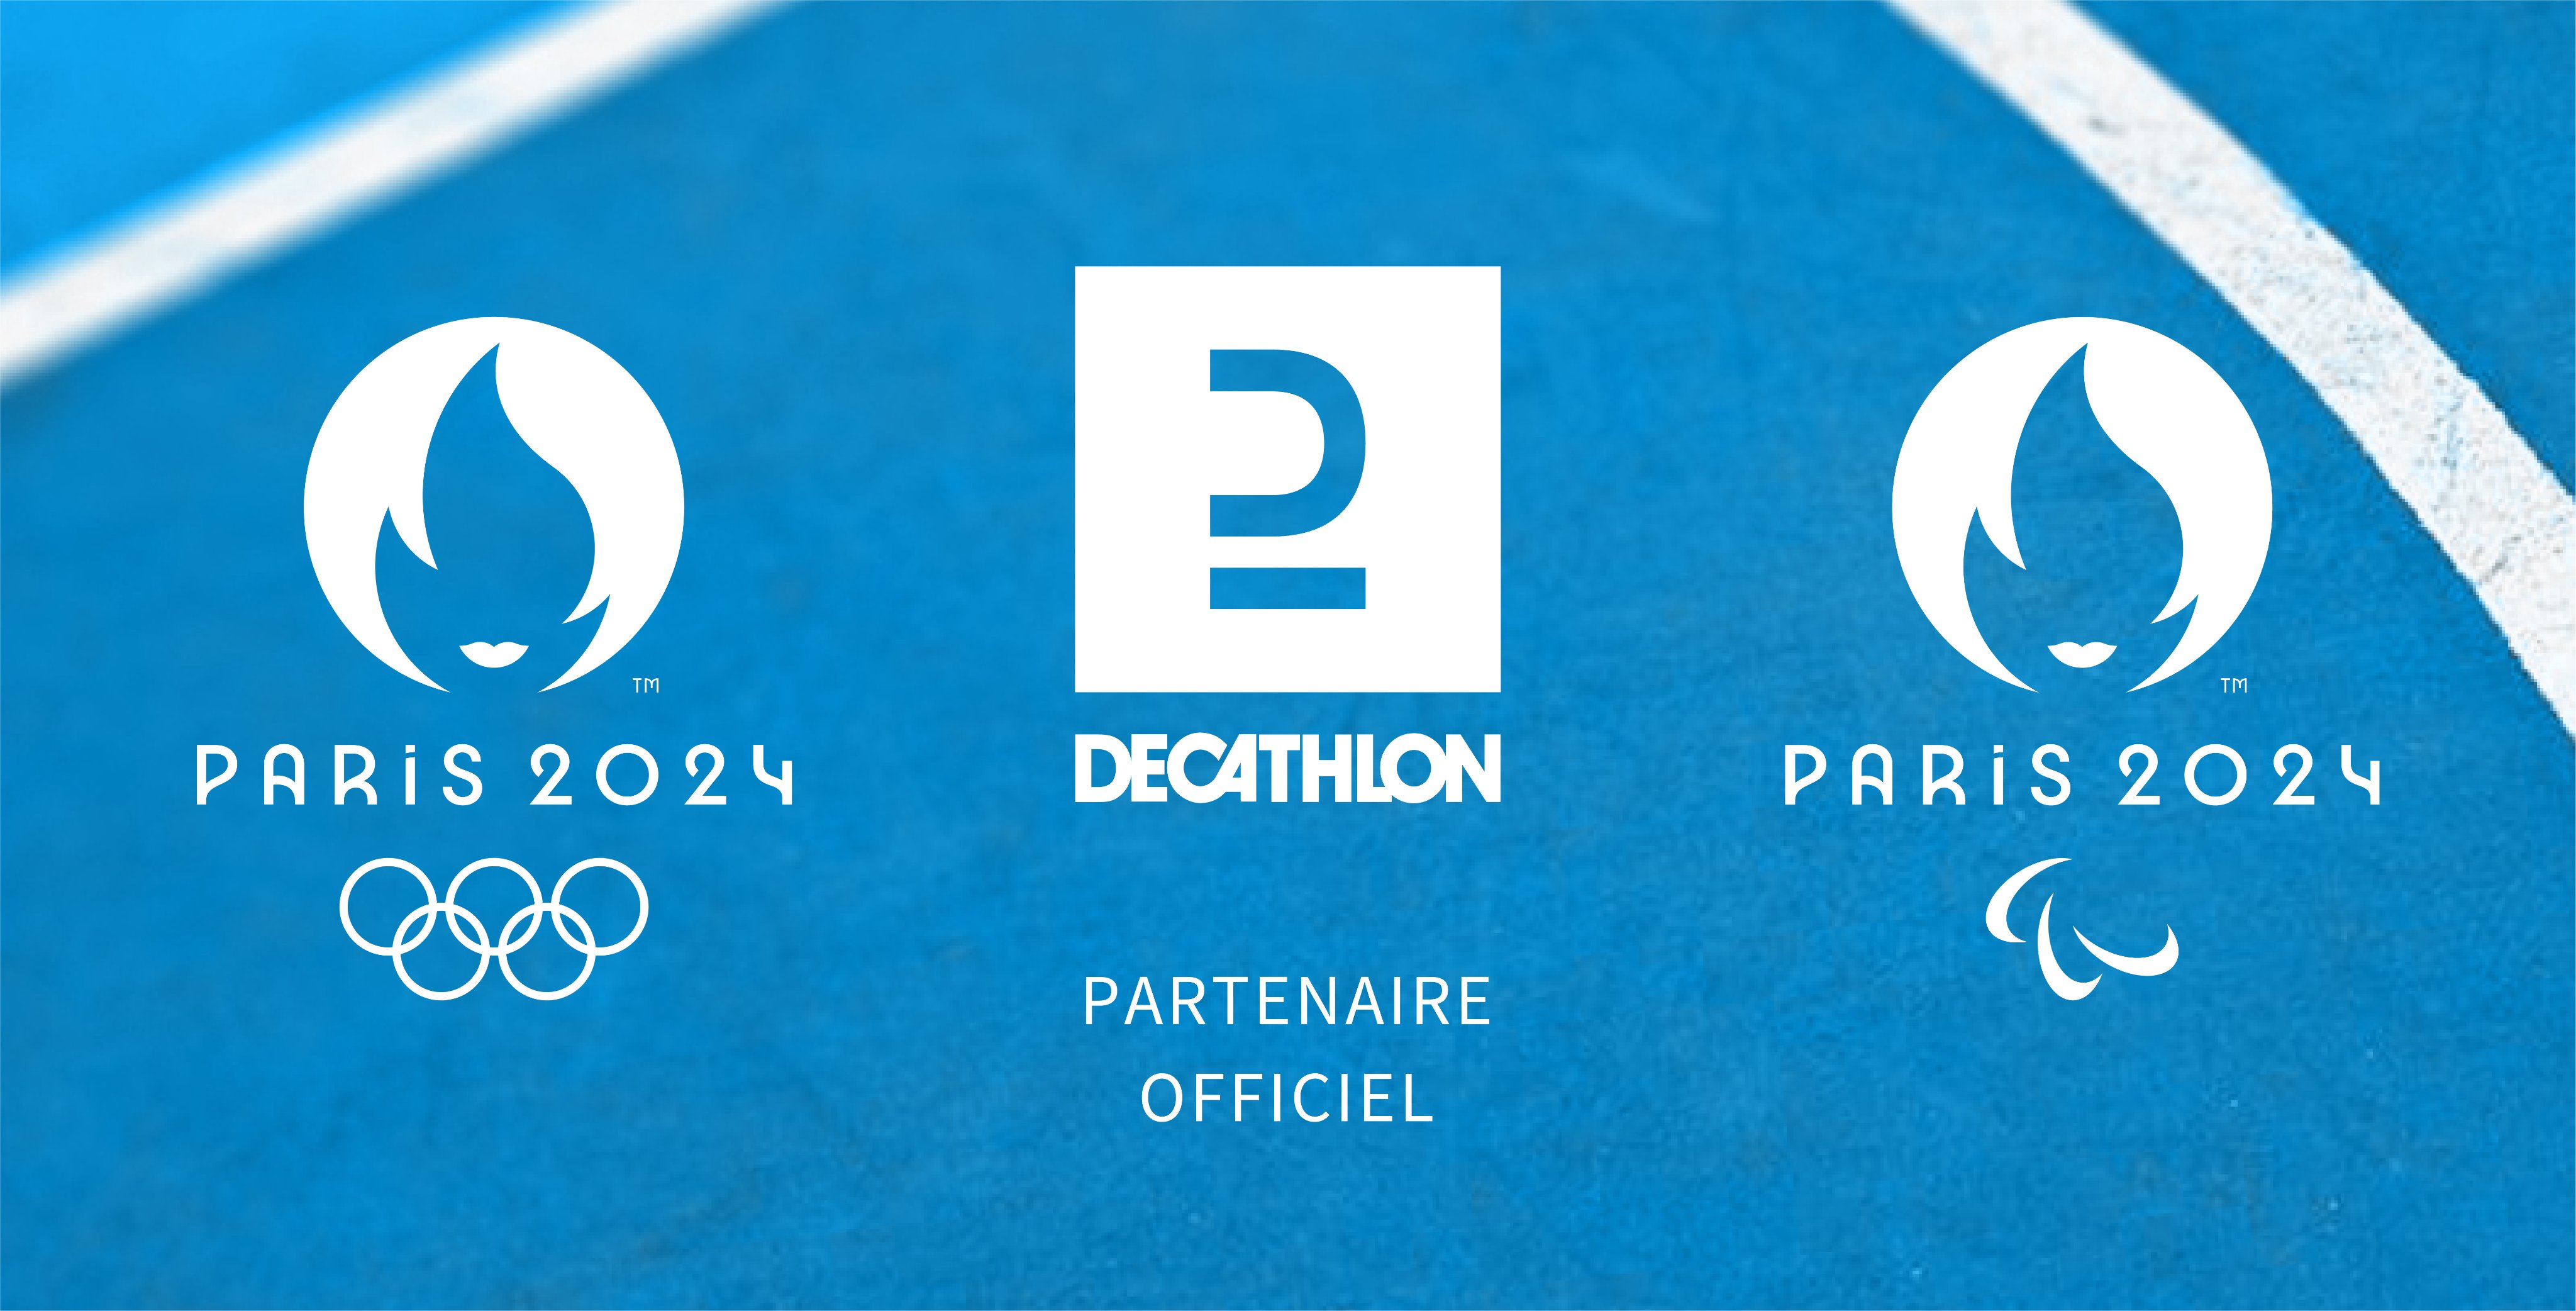 Гру 2024. Paris 2024. Paris France Decathlon. Летние Паралимпийские игры 2024.